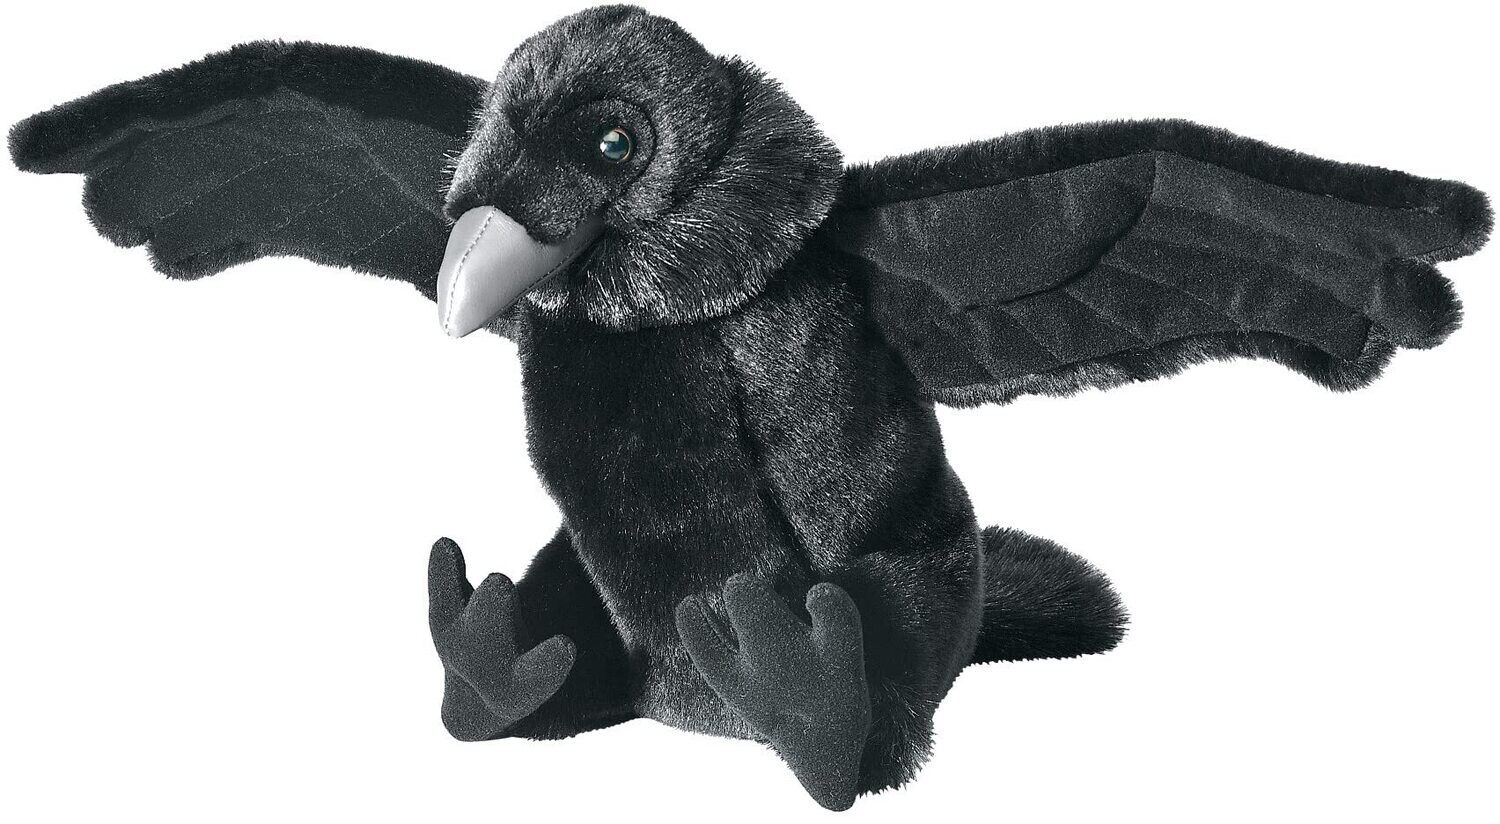 Raven Stuffed Animal